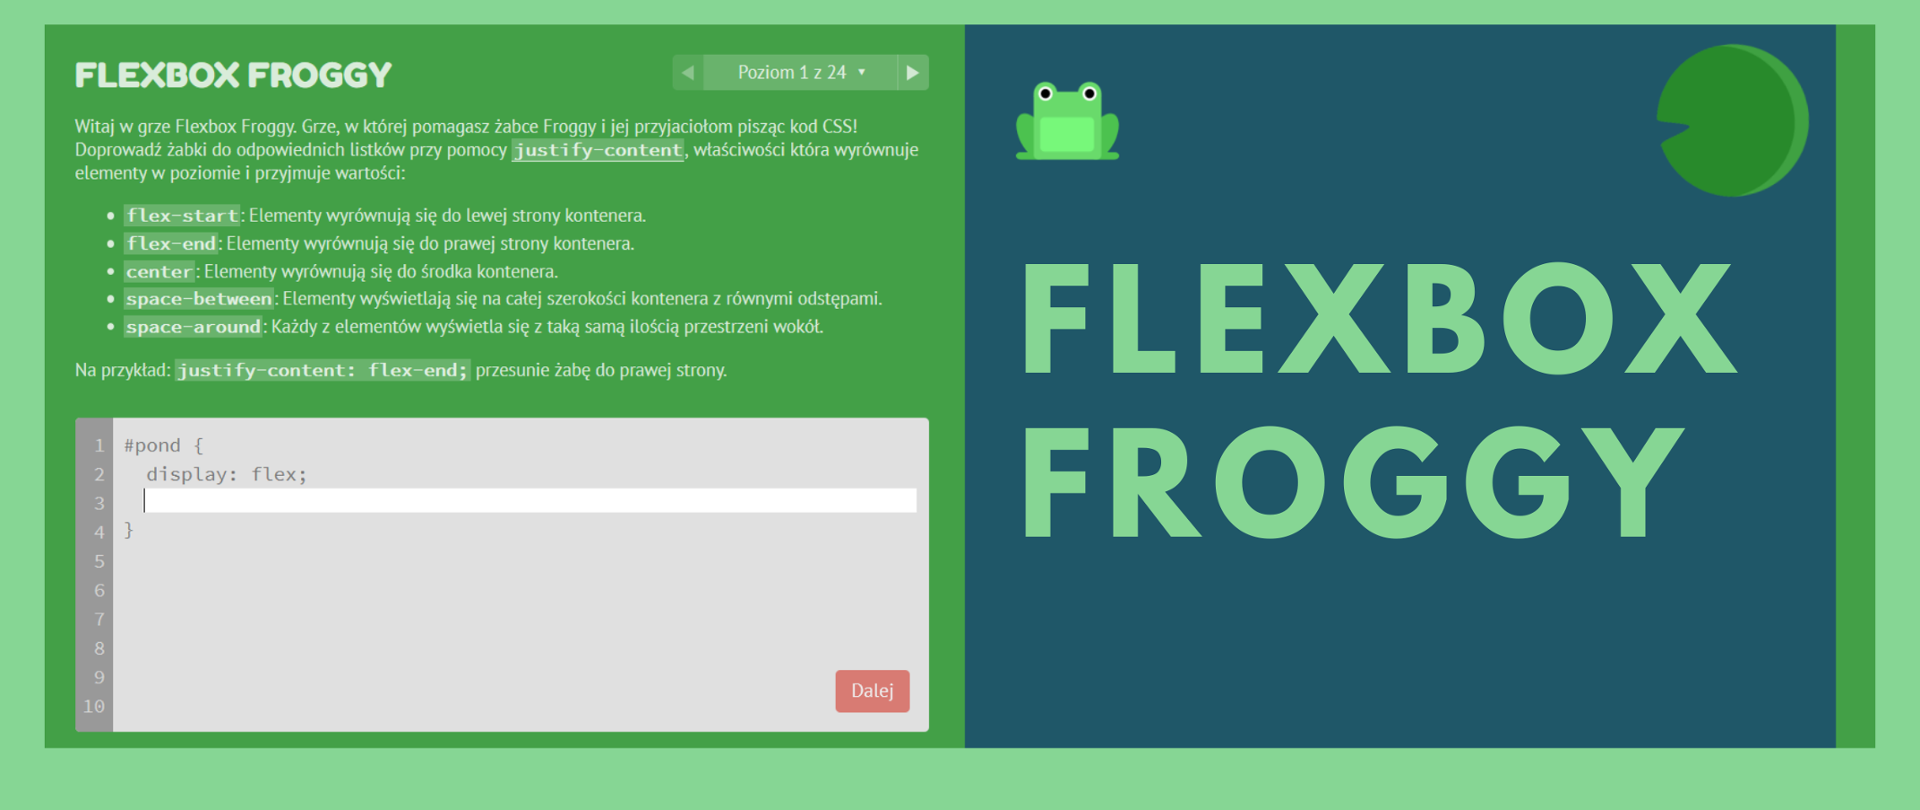 Grafika ma zielony kolor. Jest podzielona na dwie części: zieloną, gdzie widać napis "FLEXBOX FROGGY" i okno z opisem gry:
"Witaj w grze Flexbox Froggy. Grze, w której pomagasz żabce Froggy i jej przyjaciołom pisząc kod CSS! Doprowadź żabki do odpowiednich listków przy pomocy justify-content, właściwości która wyrównuje elementy w poziomie i przyjmuje wartości: flex-start: Elementy wyrównują się do lewej strony kontenera.
flex-end: Elementy wyrównują się do prawej strony kontenera.
center: Elementy wyrównują się do środka kontenera.
space-between: Elementy wyświetlają się na całej szerokości kontenera z równymi odstępami.
space-around: Każdy z elementów wyświetla się z taką samą ilością przestrzeni wokół.
Na przykład: justify-content: flex-end; przesunie żabę do prawej strony."
Poniżej widnieje pole do napisania kodu. Po prawej strtonie na ciemnoniebieskim tle widać napis w kolorze zielonym: FLEXBOX FROGGY. Ponad napisem widać żabkę i postać Pacmana. 